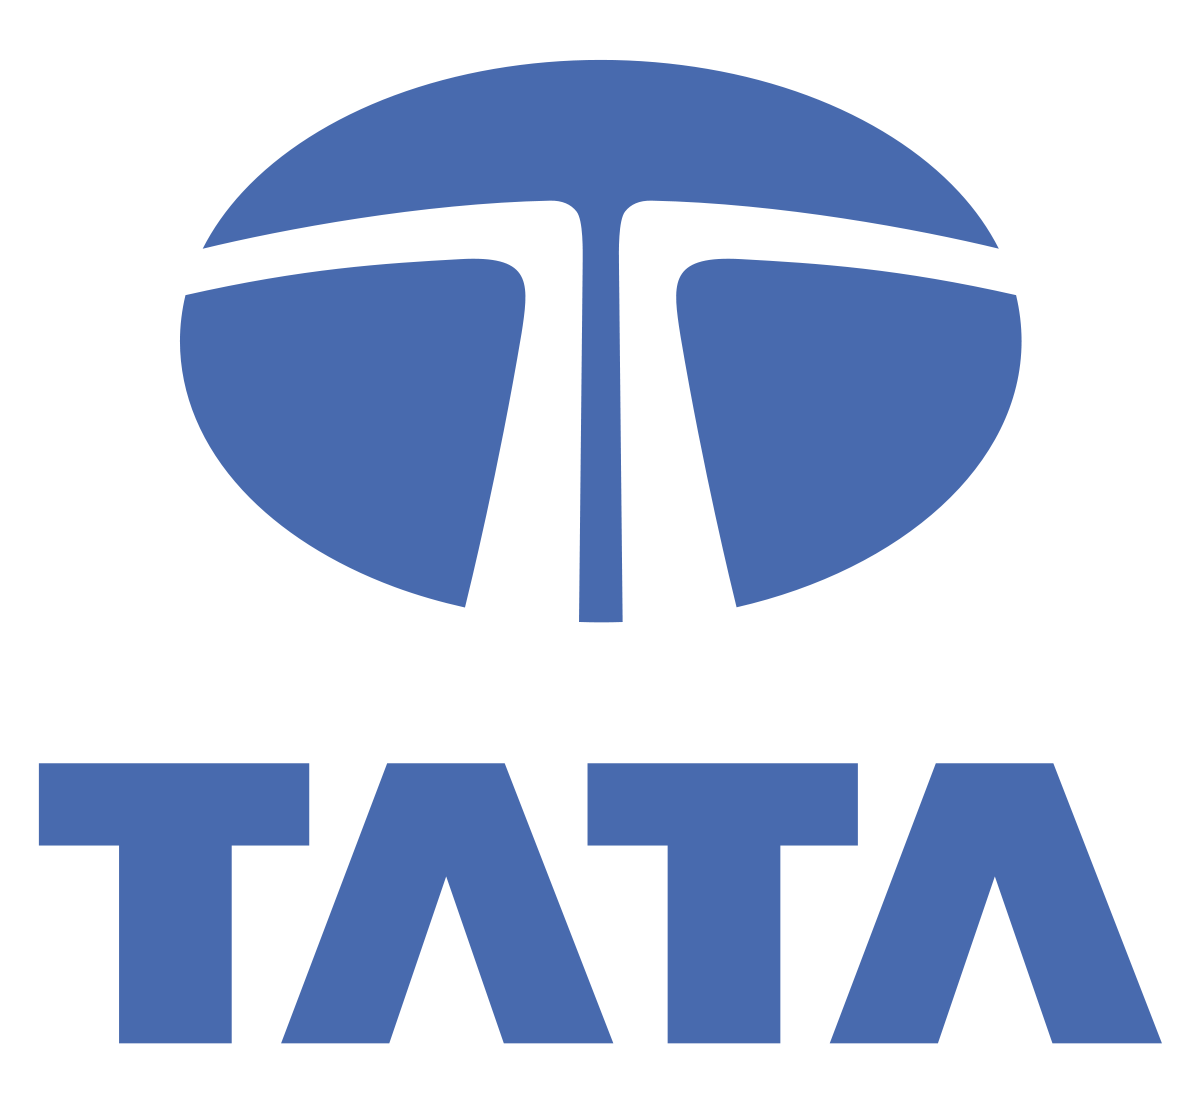 Chain of Hotels Tata Logo - Tata Group